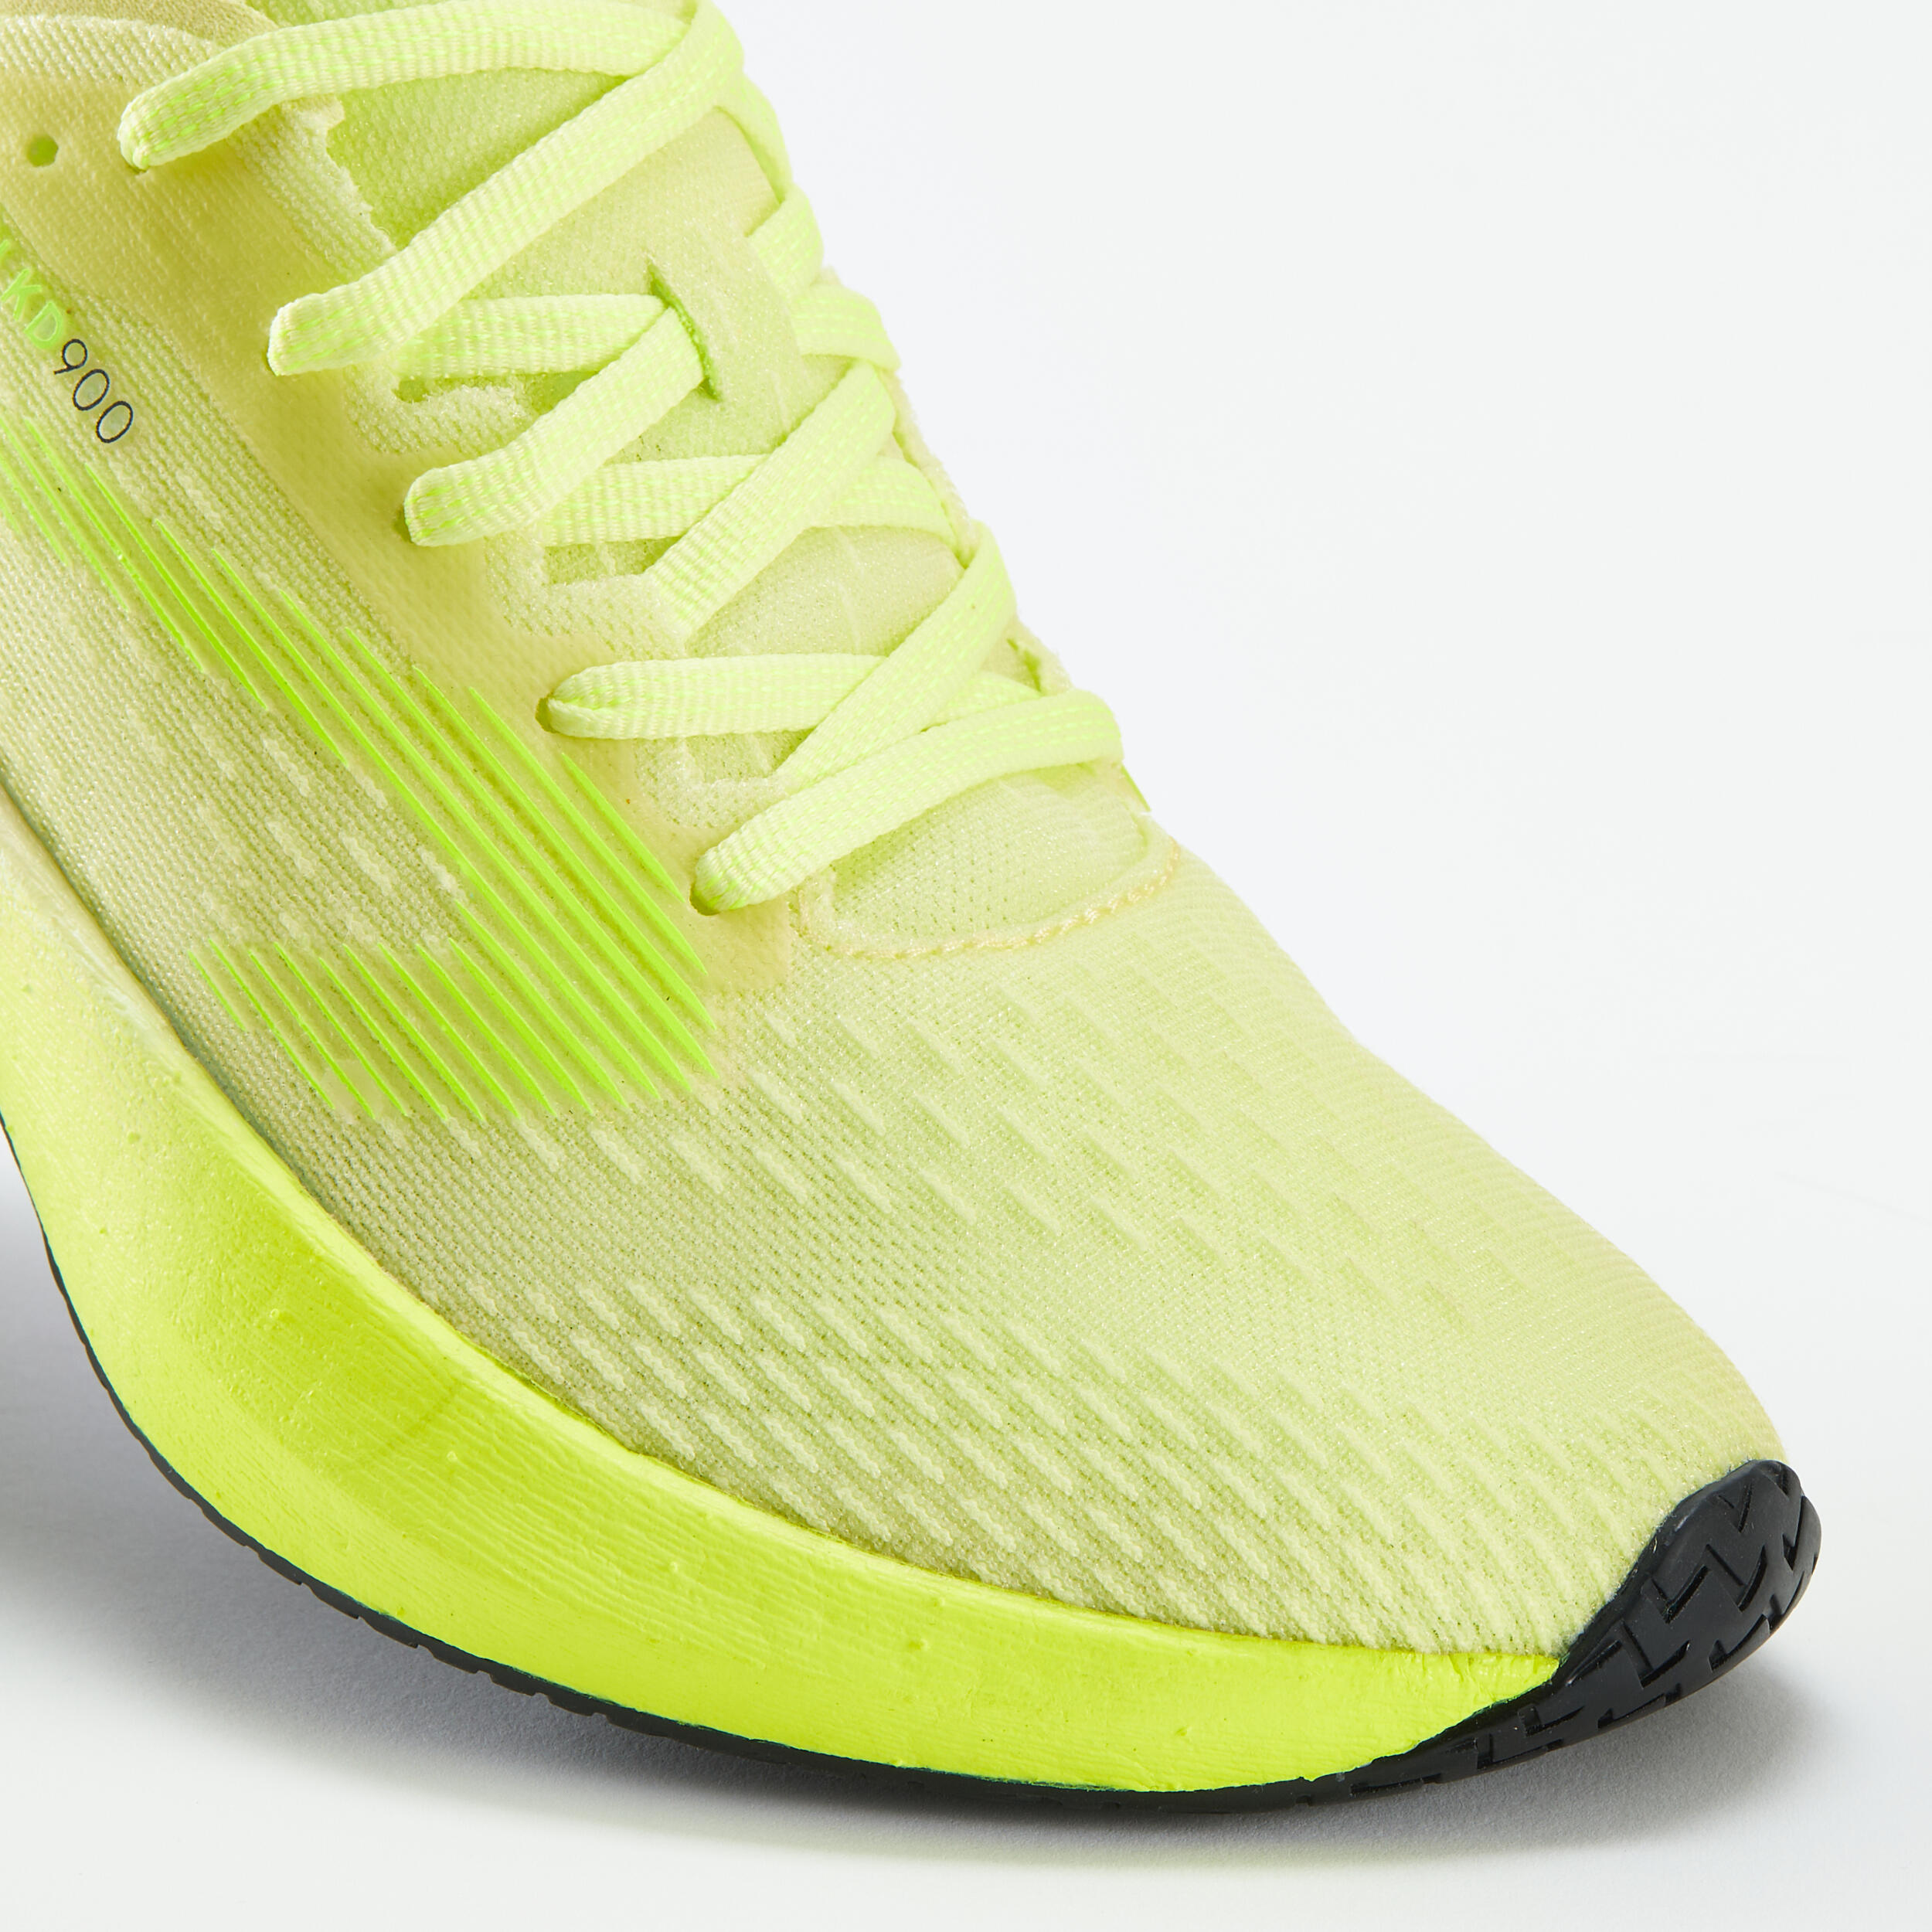 KD900 Women's Running Shoes -Yellow 5/8